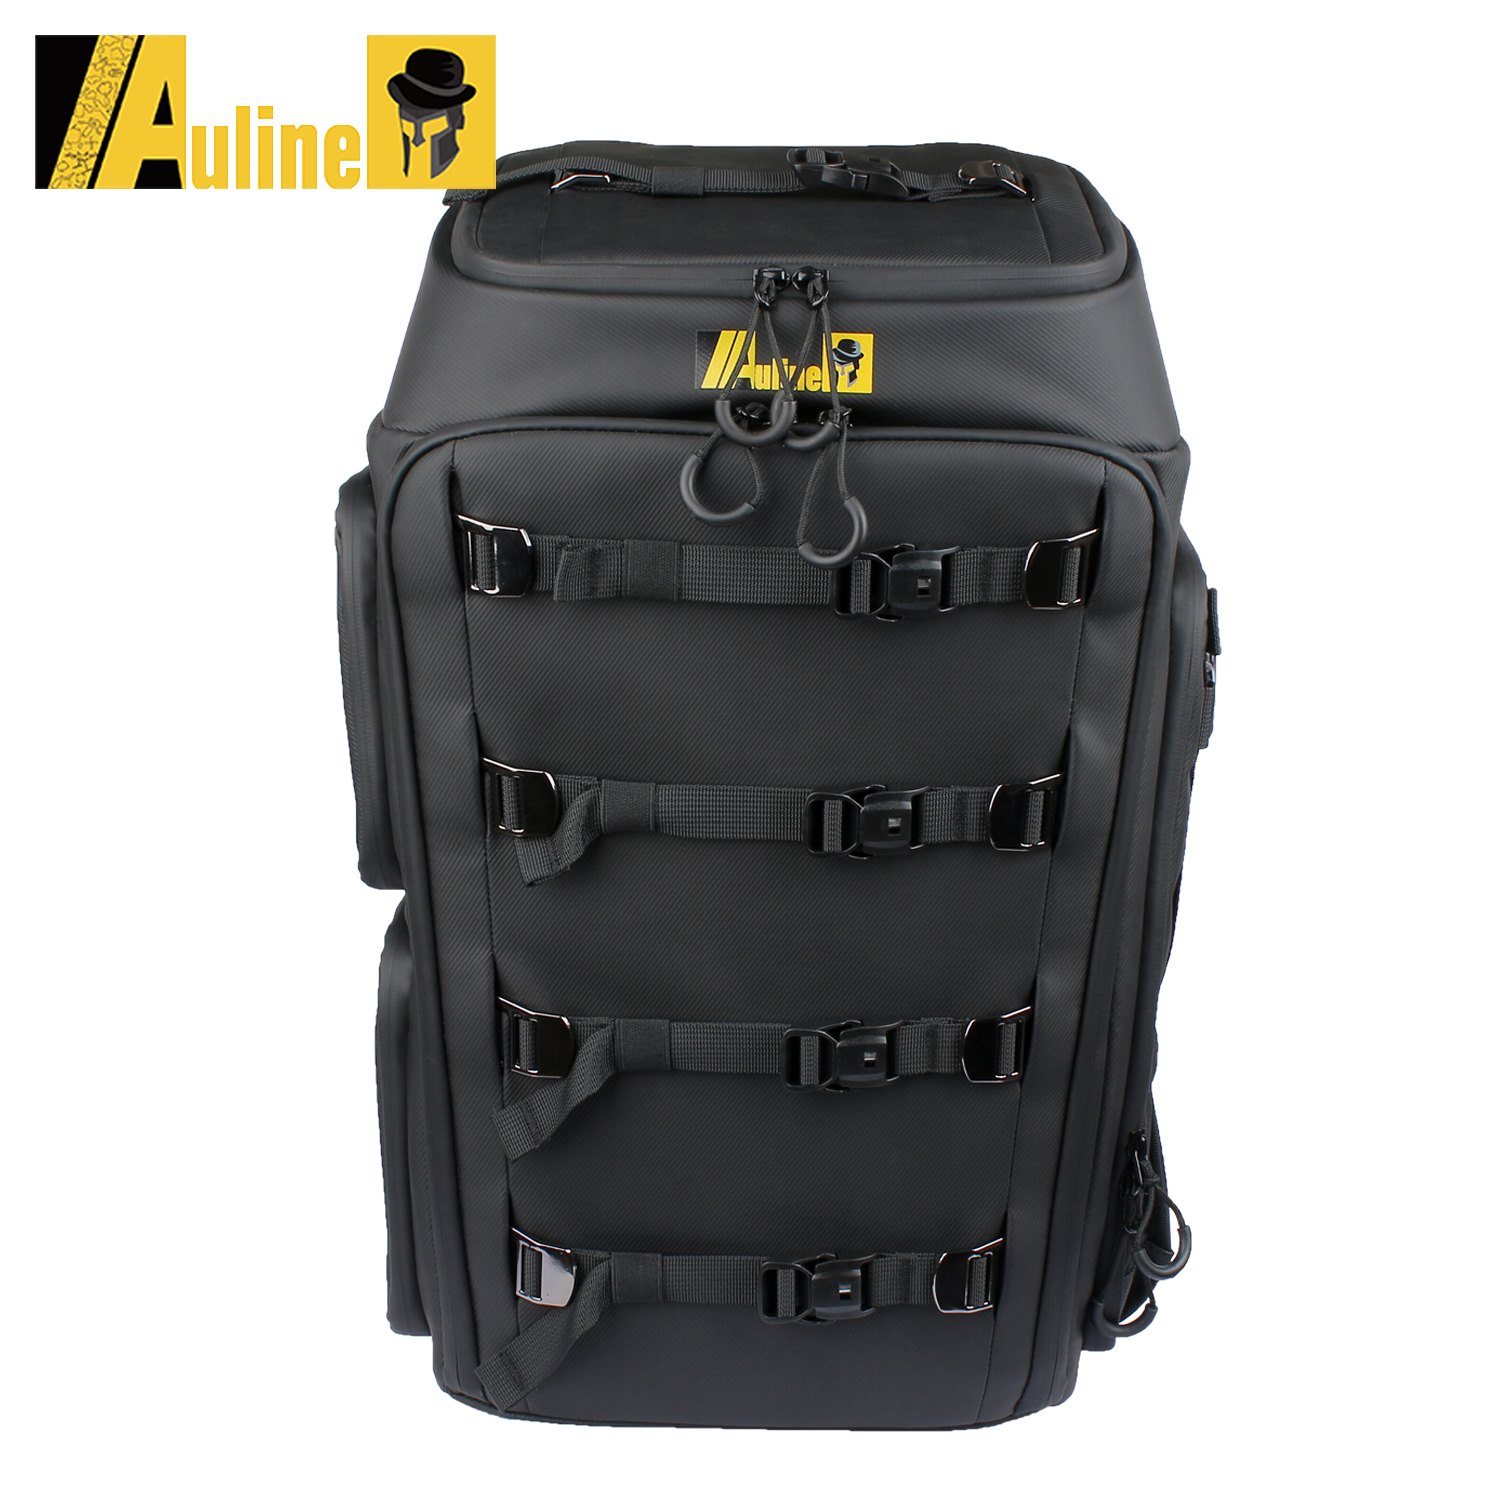 AU-Line FPV専用 Backpack